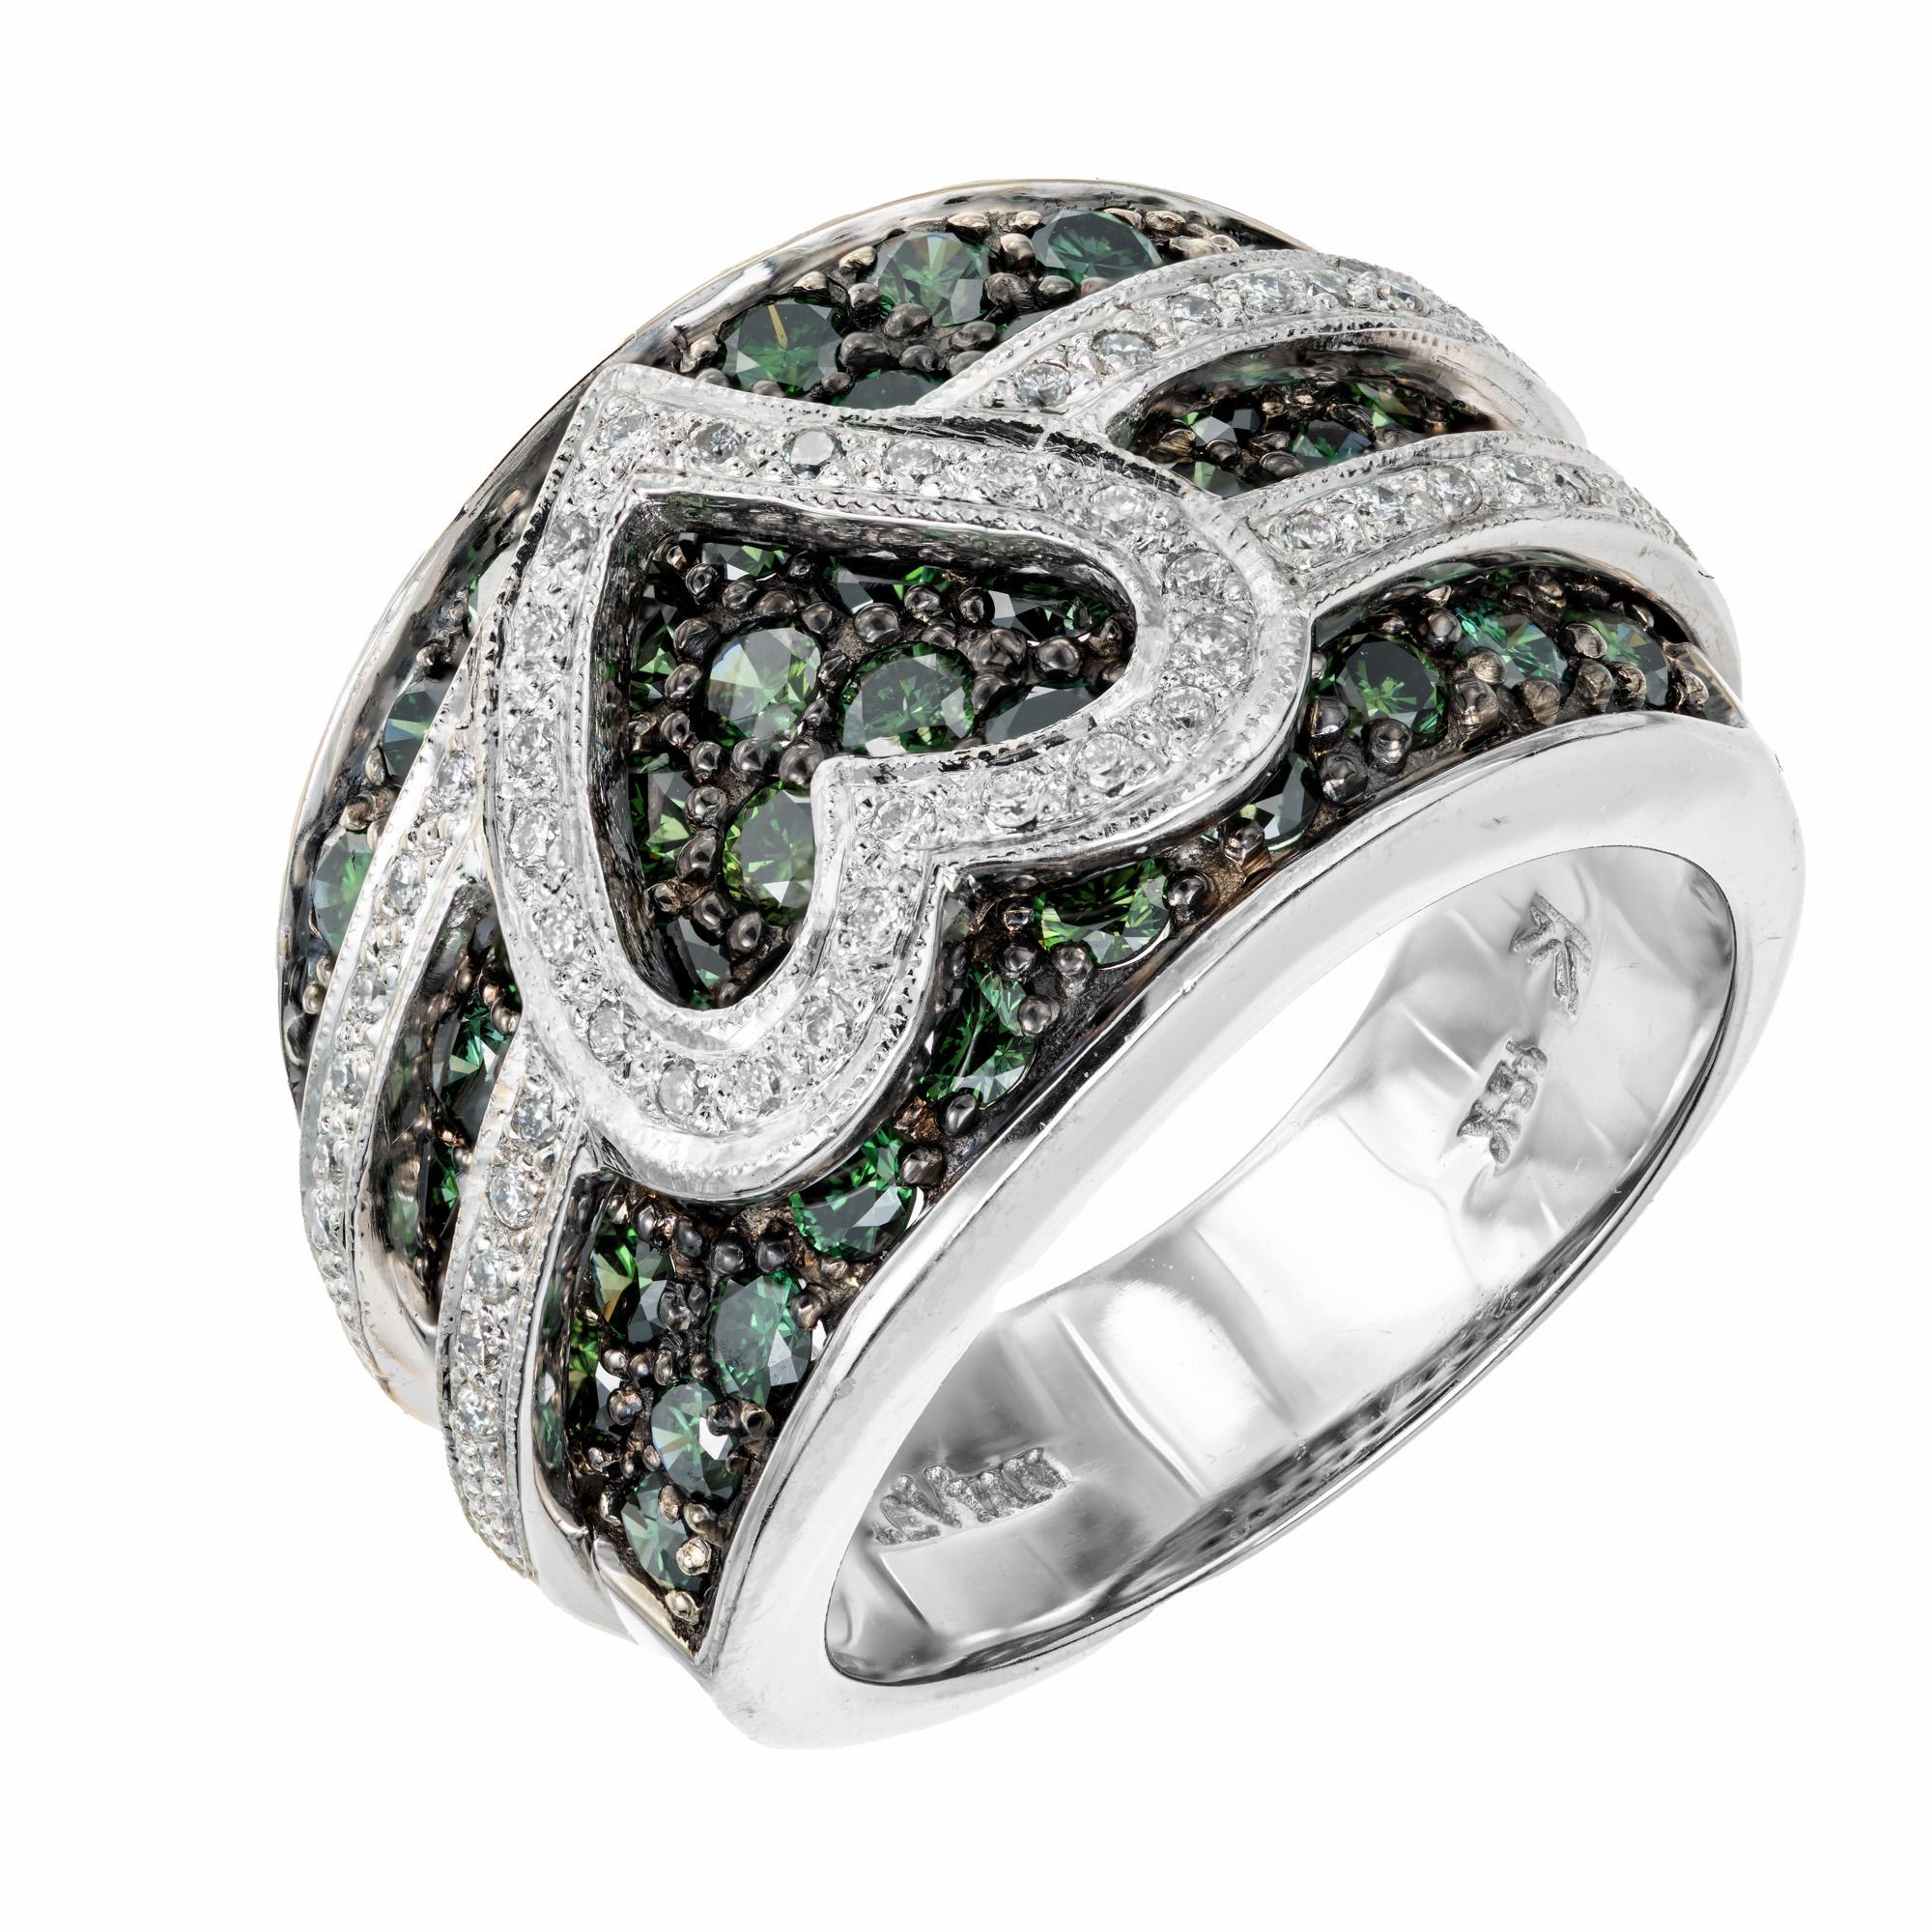 Cocktailring mit blau-grünem Diamanten von Le Vian. Dieser breite Ring aus 18 Karat Weißgold ist bekannt für sein ausgeprägtes, farbenfrohes und kühnes Design und besticht durch eine Gruppe von 56 runden blaugrünen Diamanten mit einem Gesamtgewicht